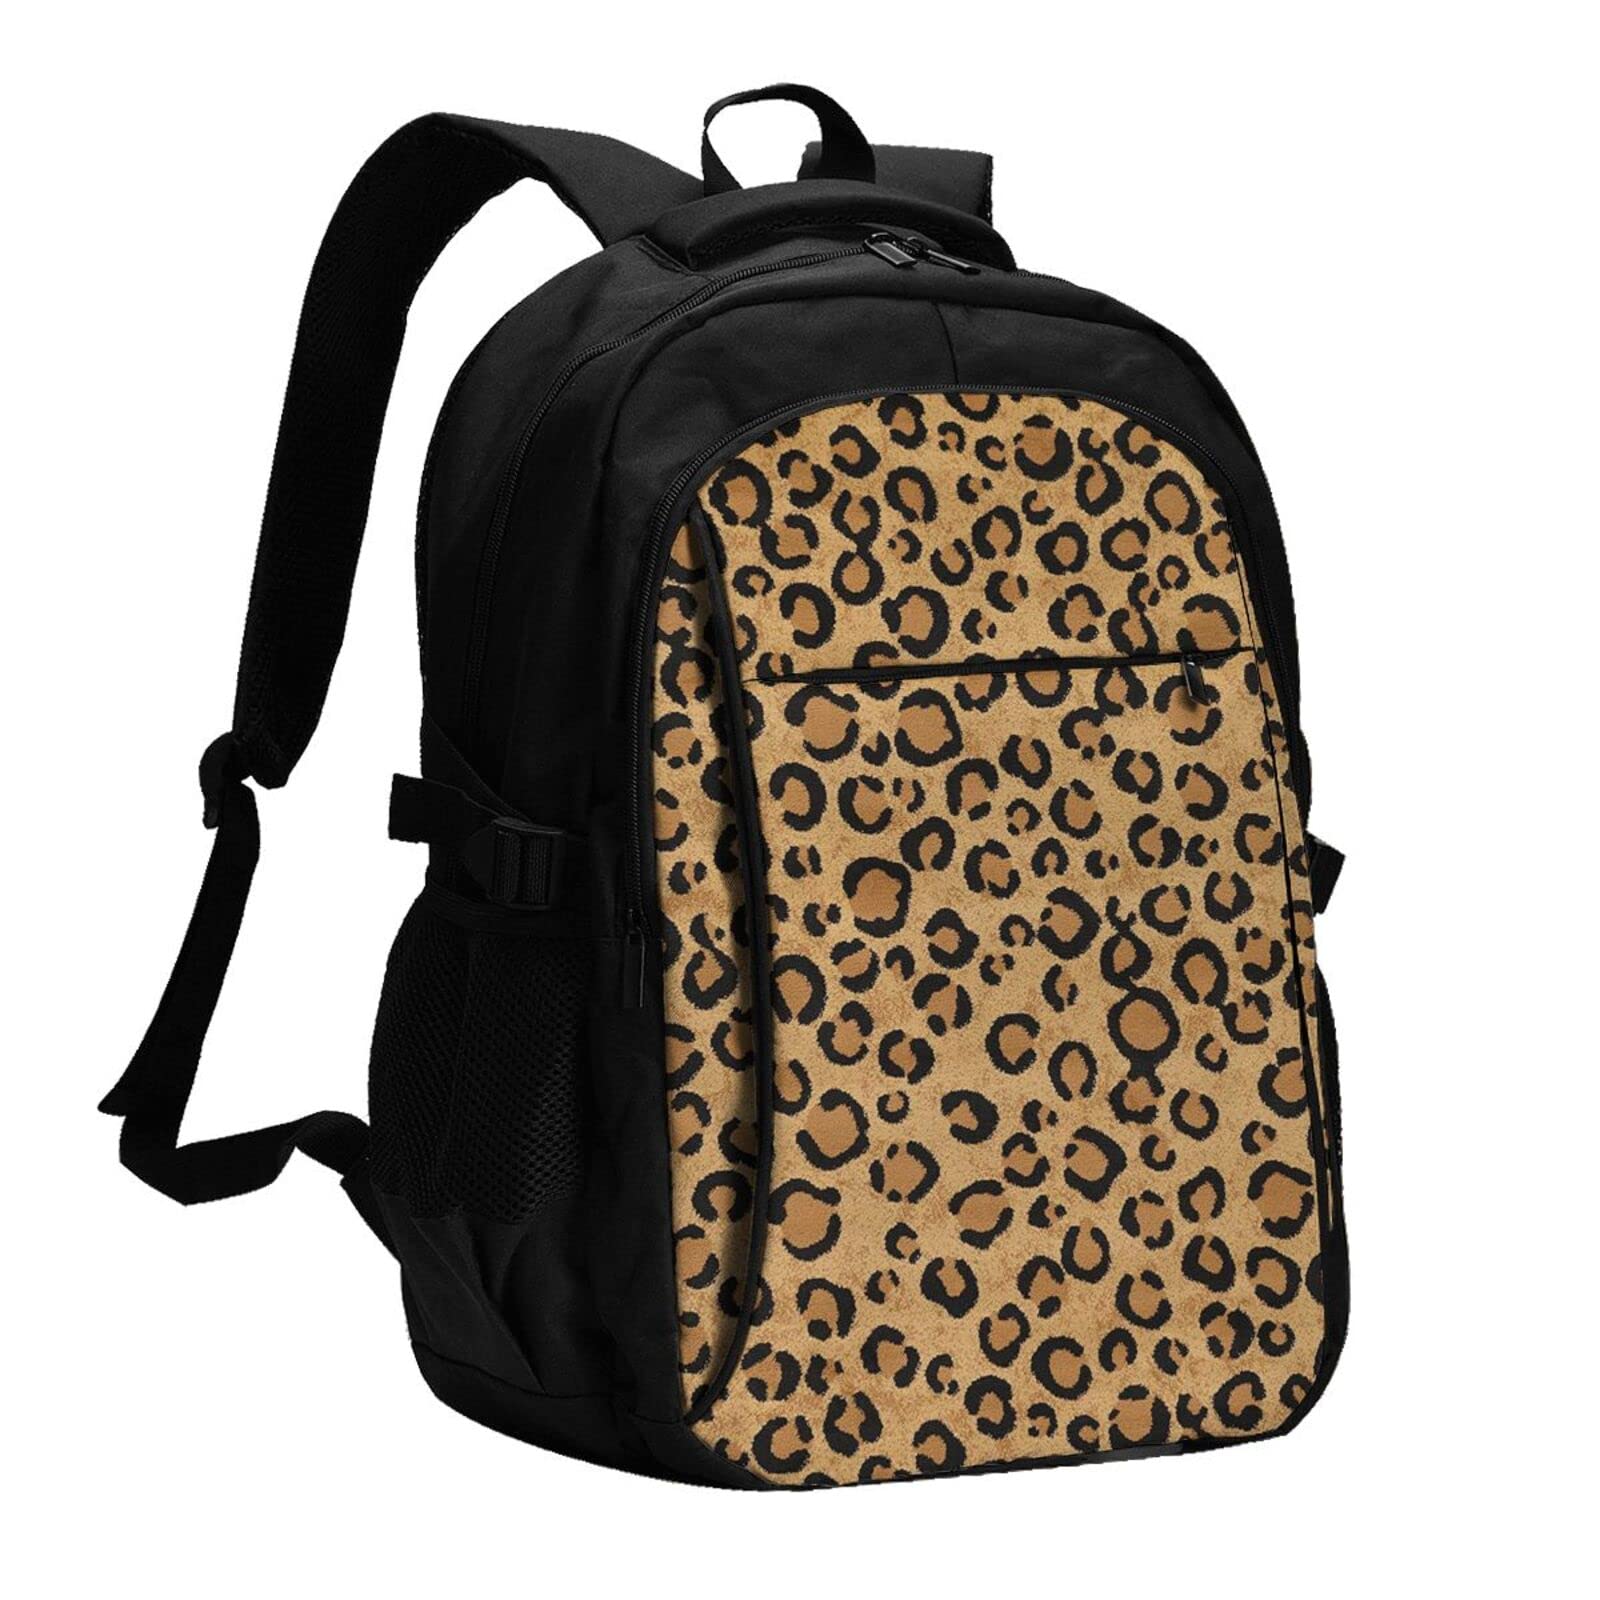 送料無料EVANEM Wild Leopard Animal Printed Laptop Backpack With Usb Charging Port And Music Jack Travel Backpack Business